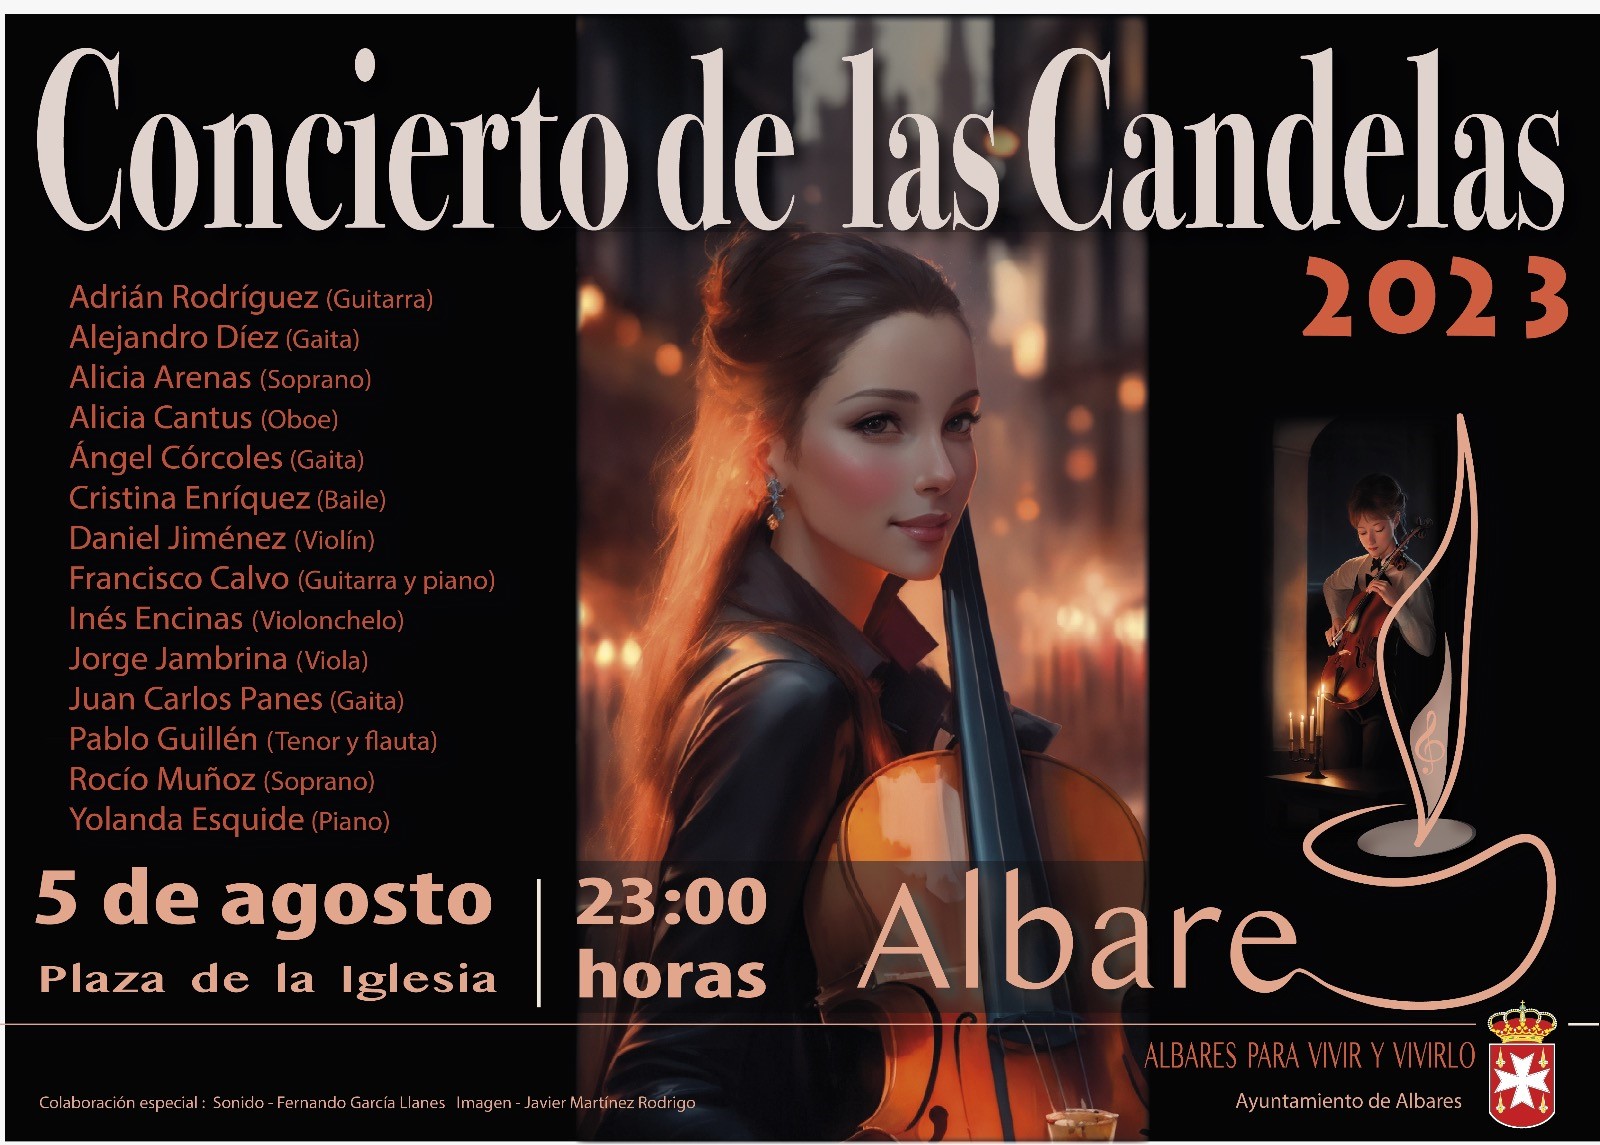 Cartel del Concierto de las Candelas en Albares, en su edición de 2023.